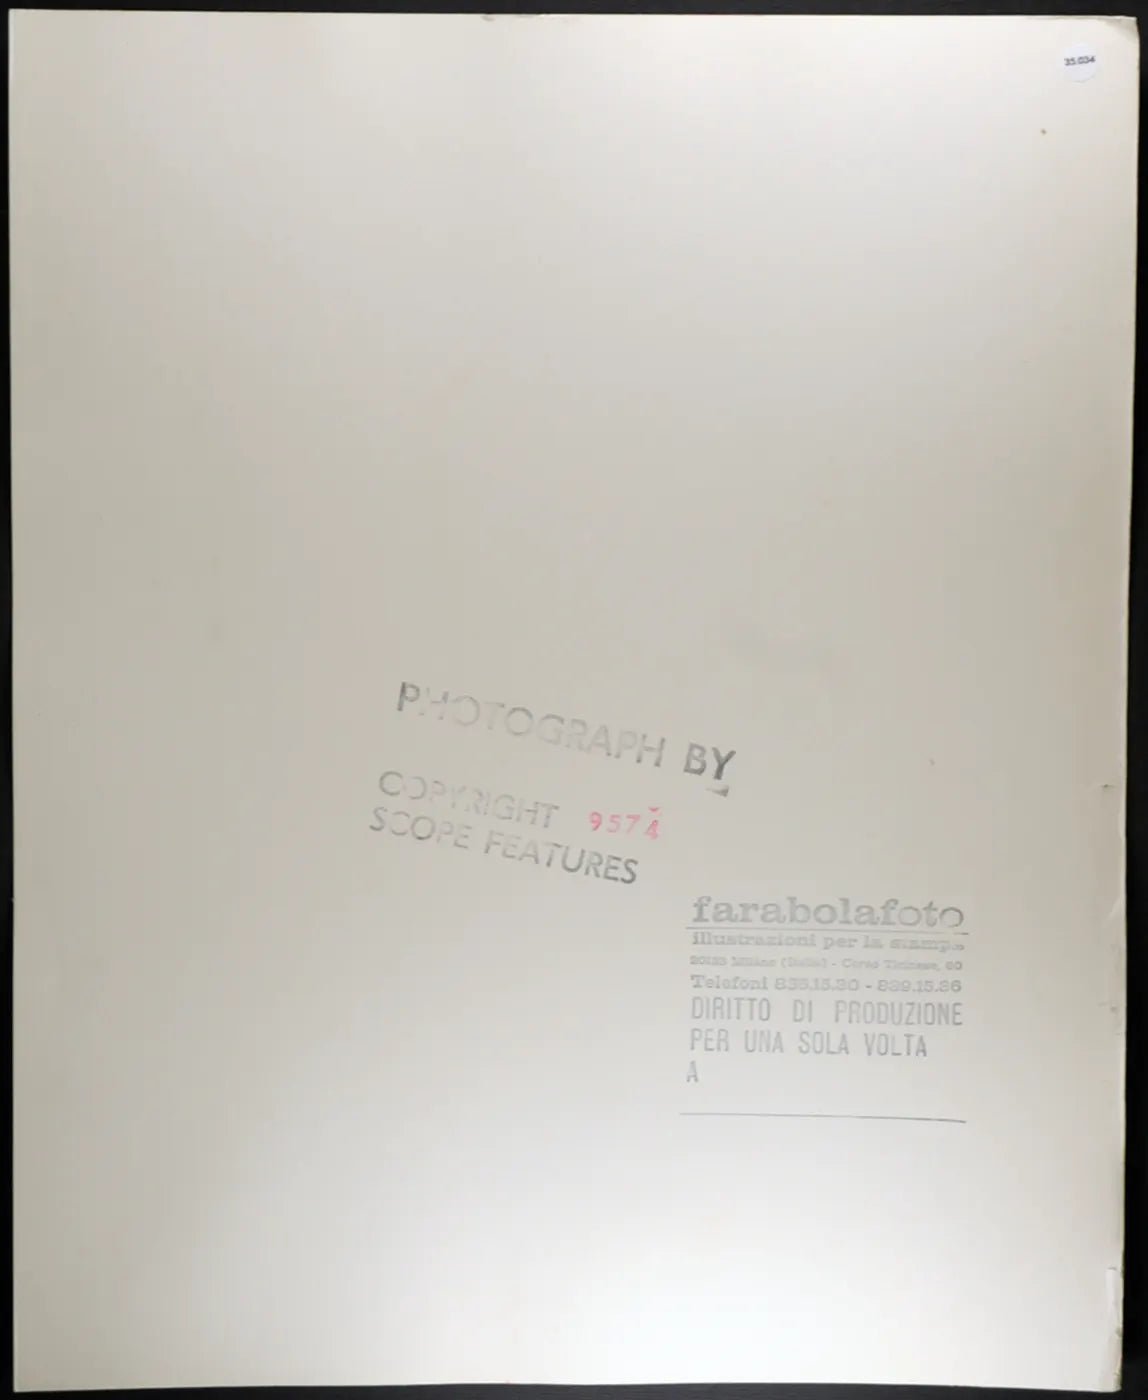 Joey Travolta Film Cacciatori della notte Ft 35034 - Stampa 30x40 cm - Farabola Stampa ai sali d'argento